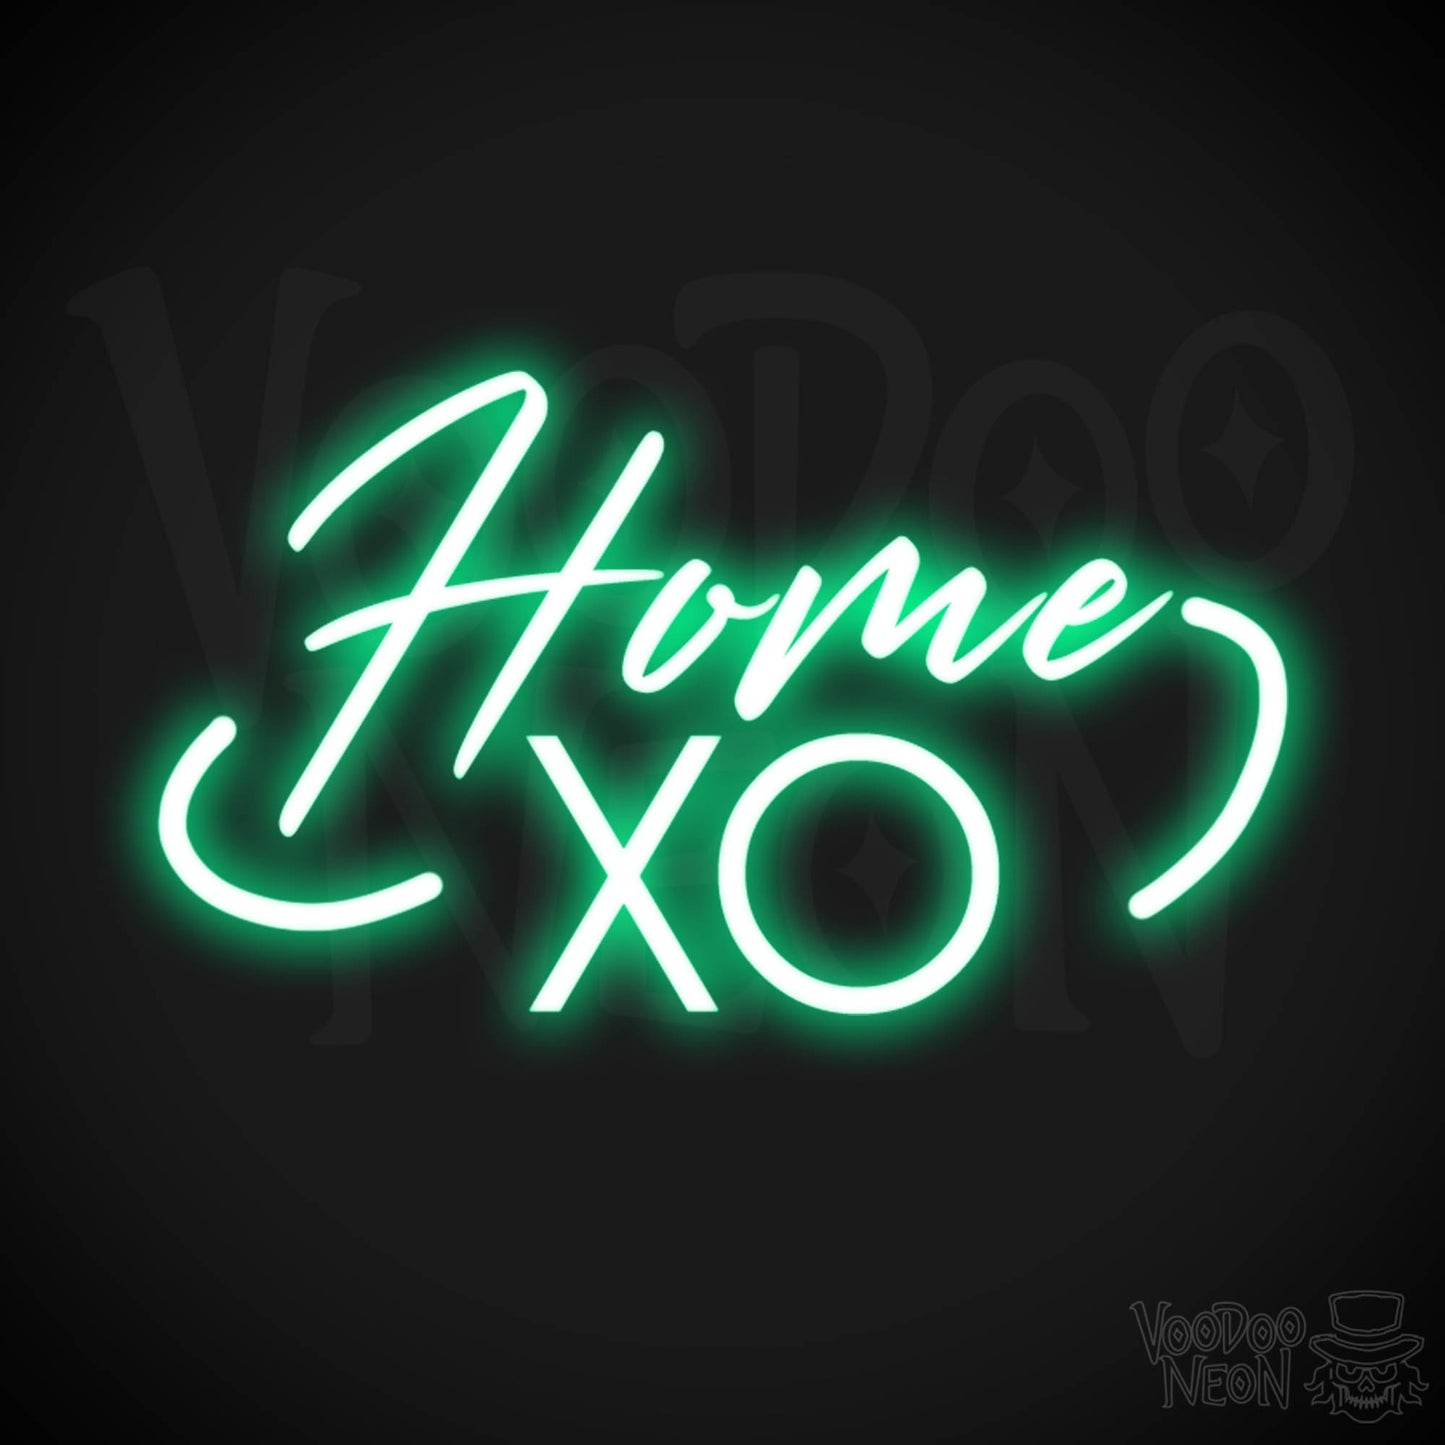 Home XO Neon Sign - Neon Home XO Sign - Wall Art - Color Green